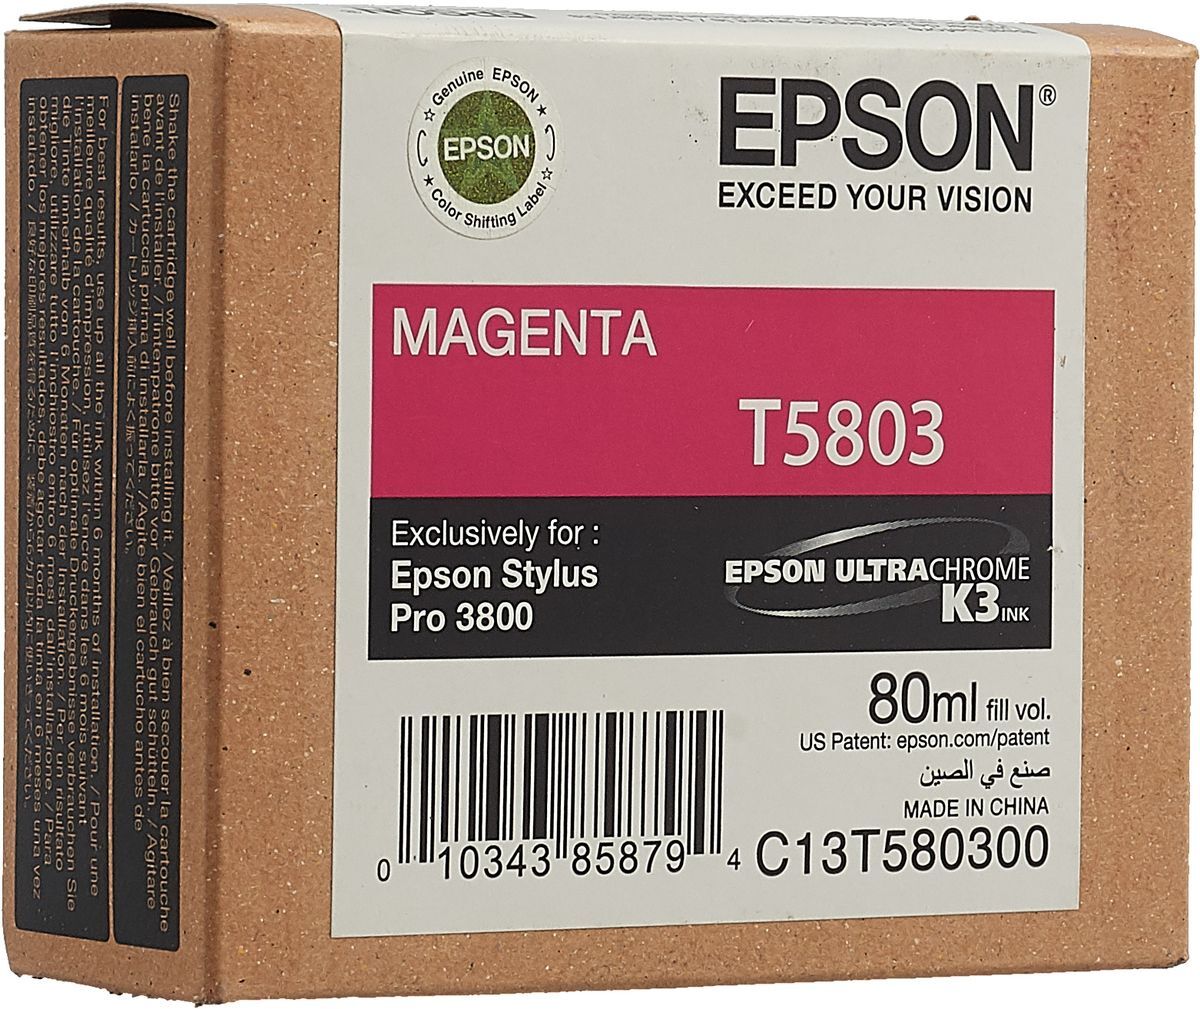 Картридж для печати Epson Картридж Epson T5803 C13T580300 вид печати струйный, цвет Пурпурный, емкость 80мл.